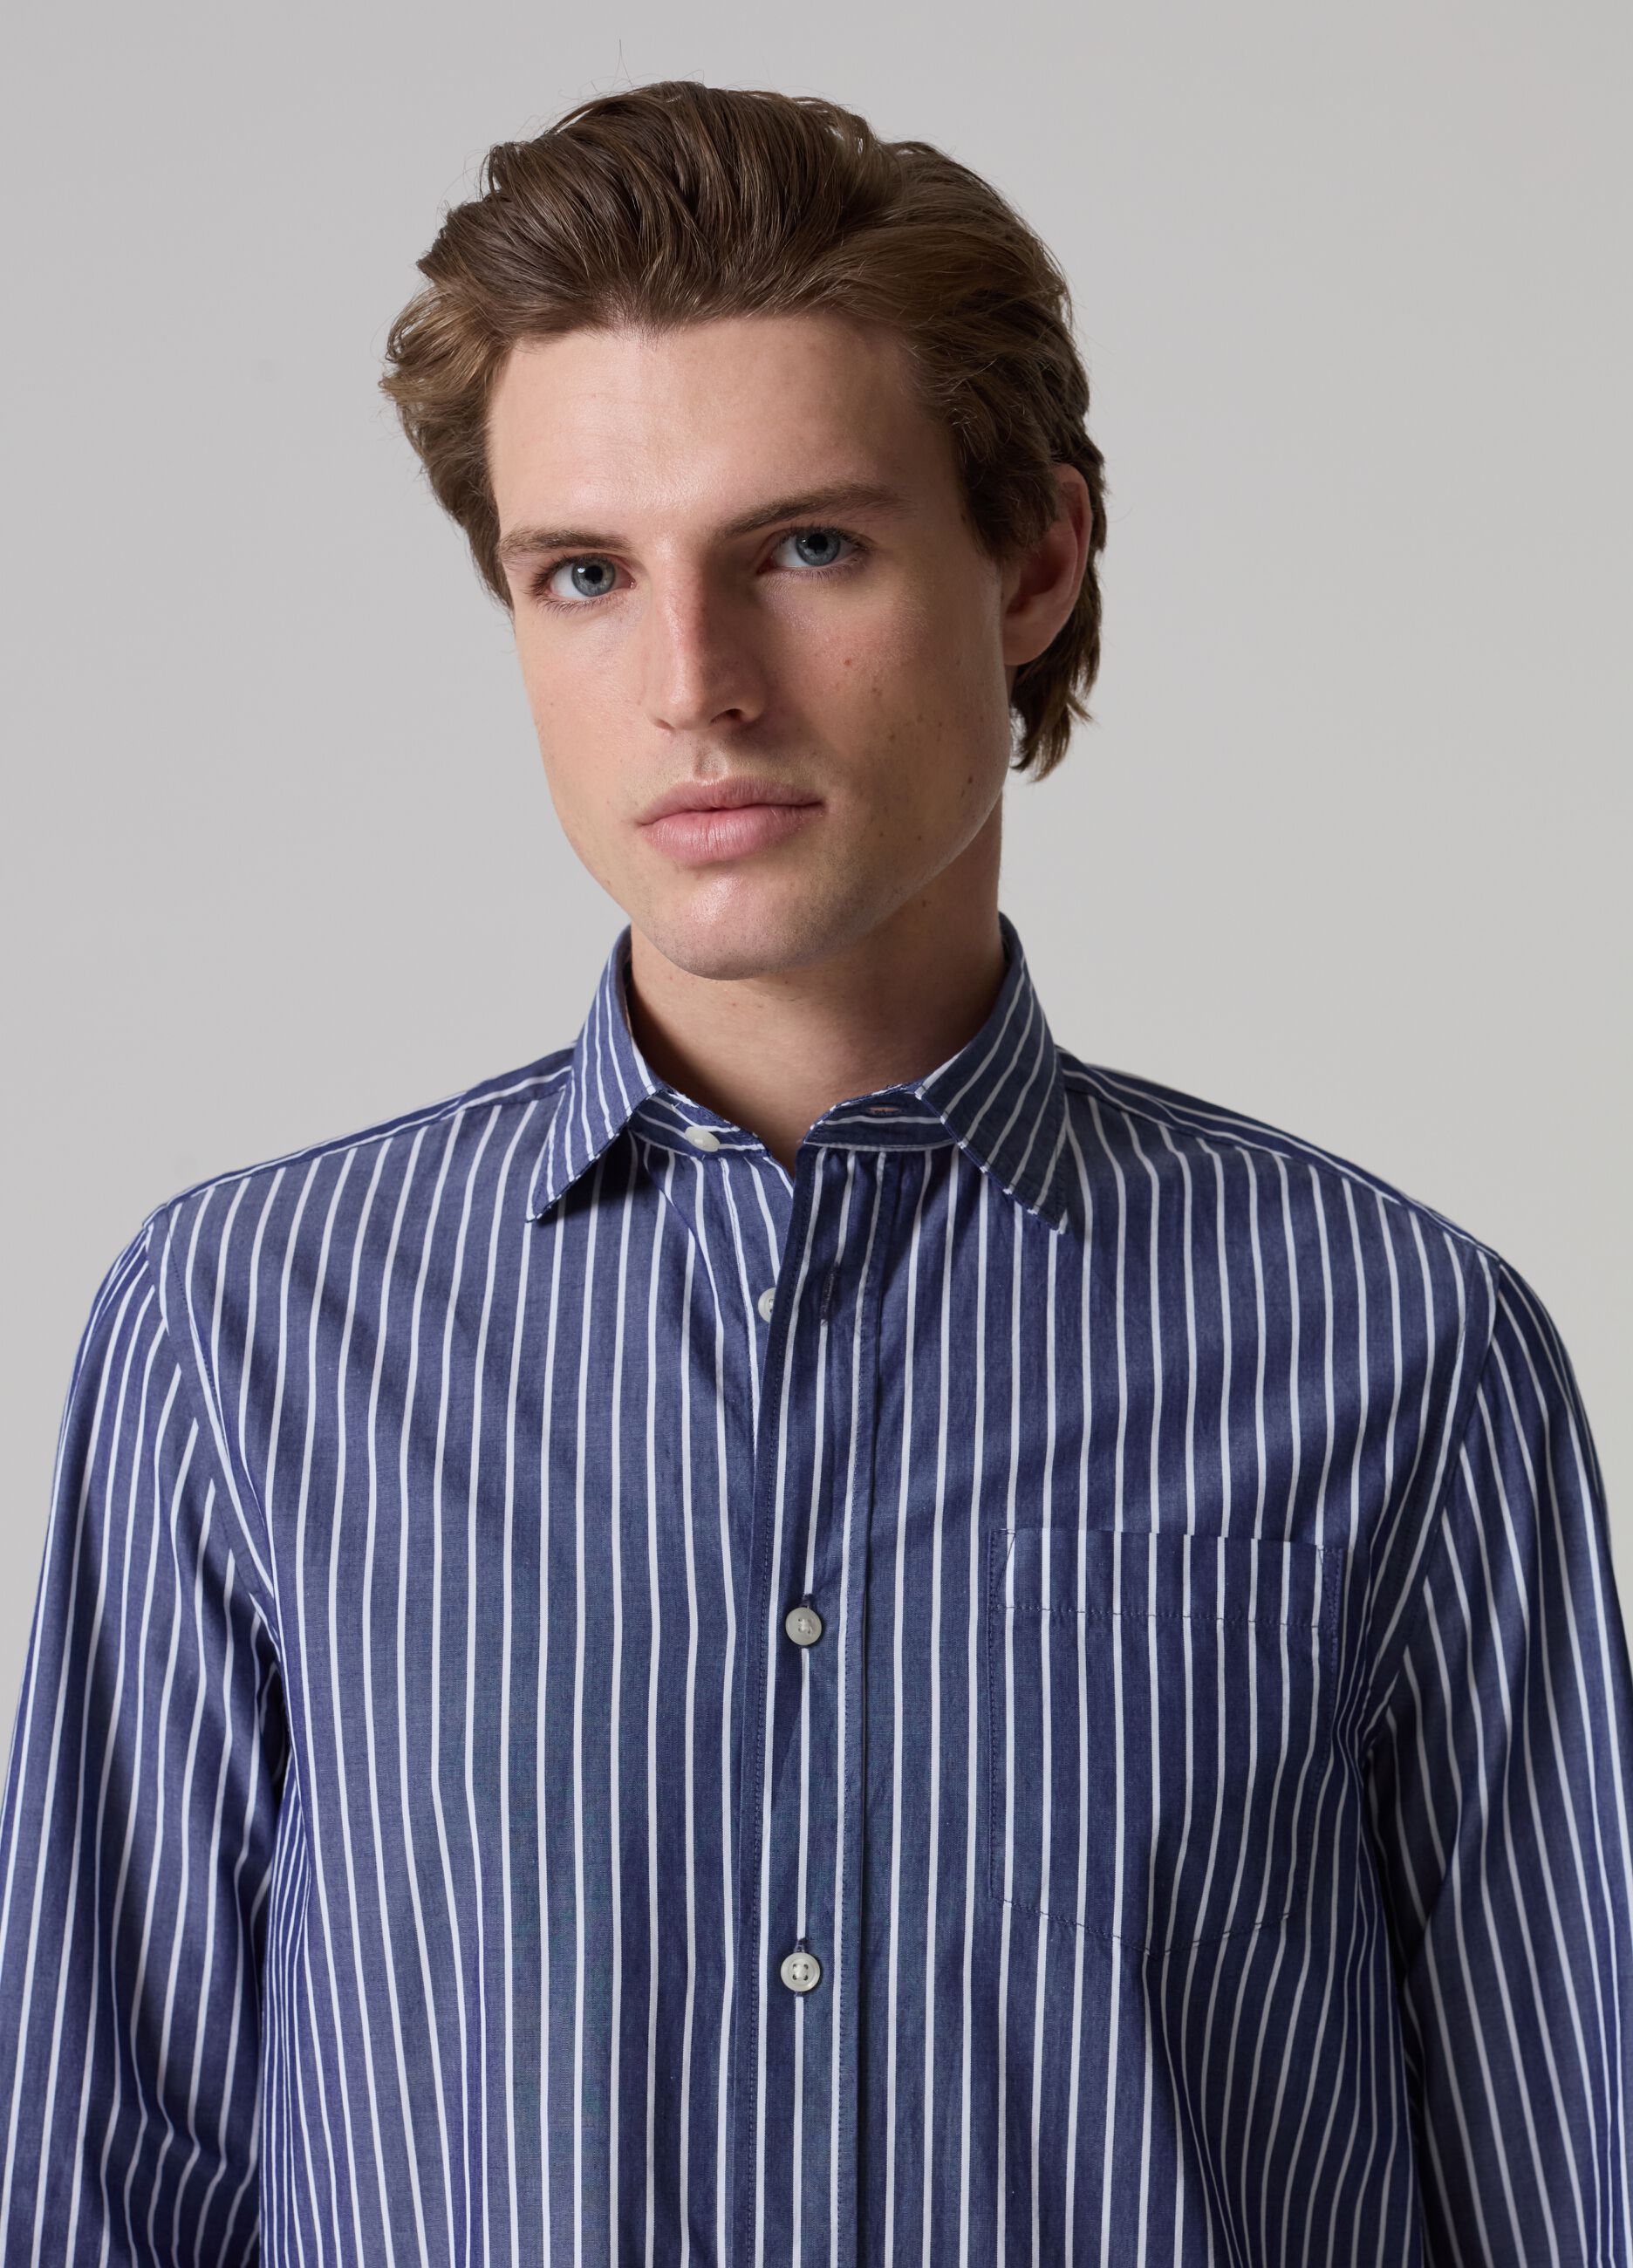 Striped poplin shirt with pocket